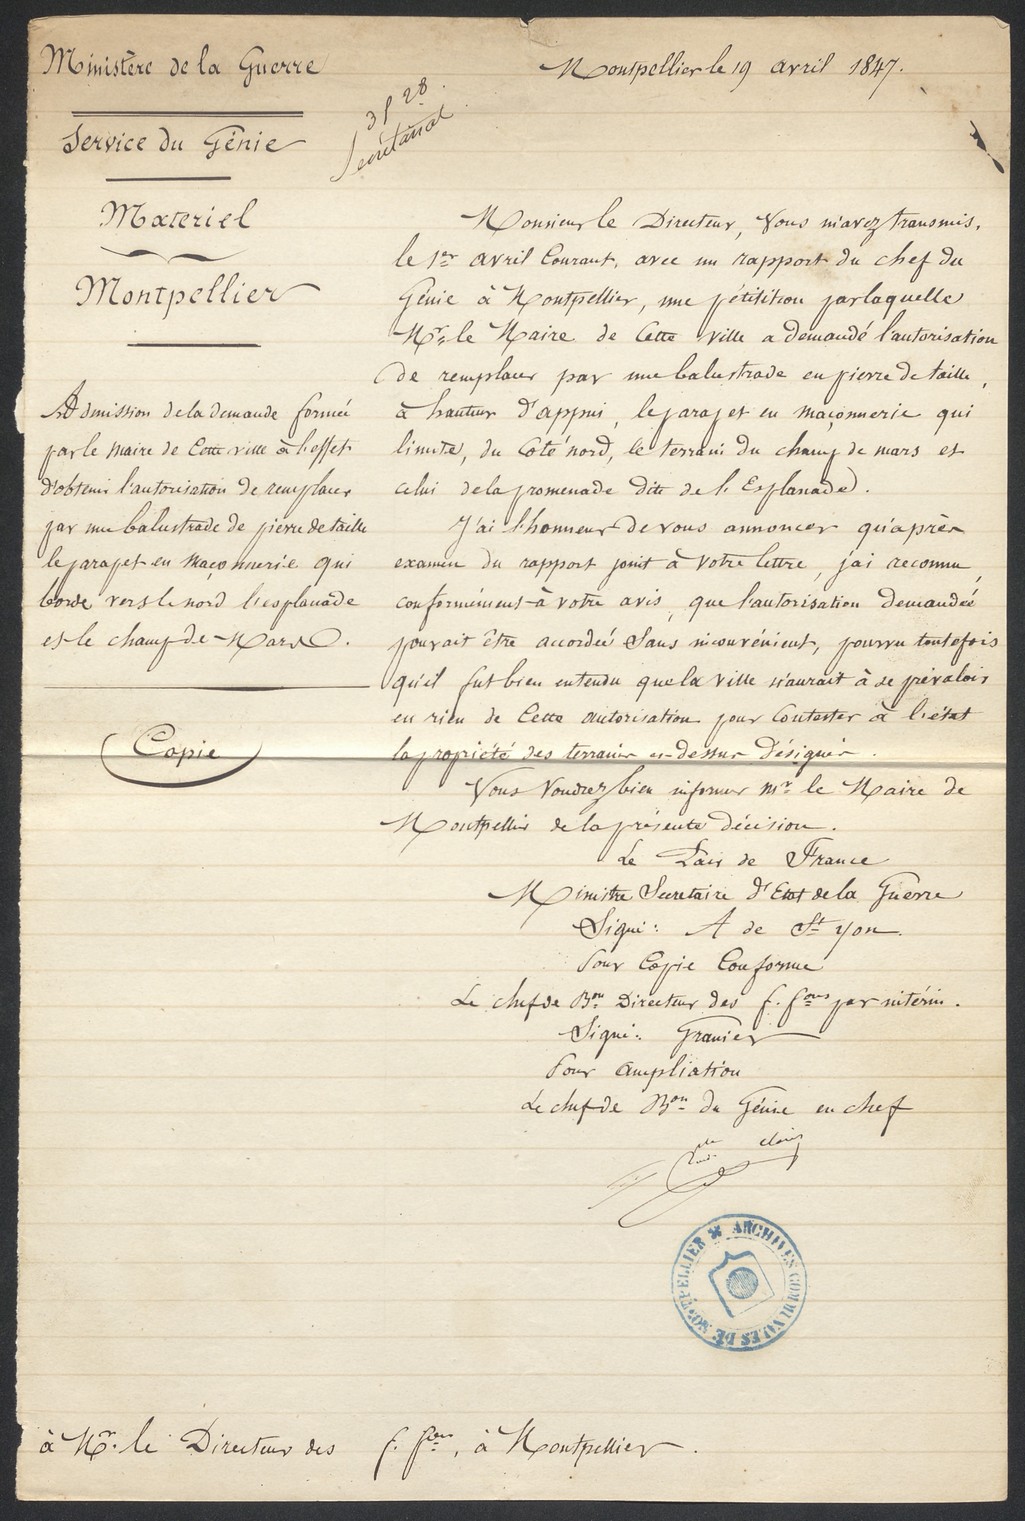 Autorisation Ministère guerre, pour balustrade, 1847. AMM, série O